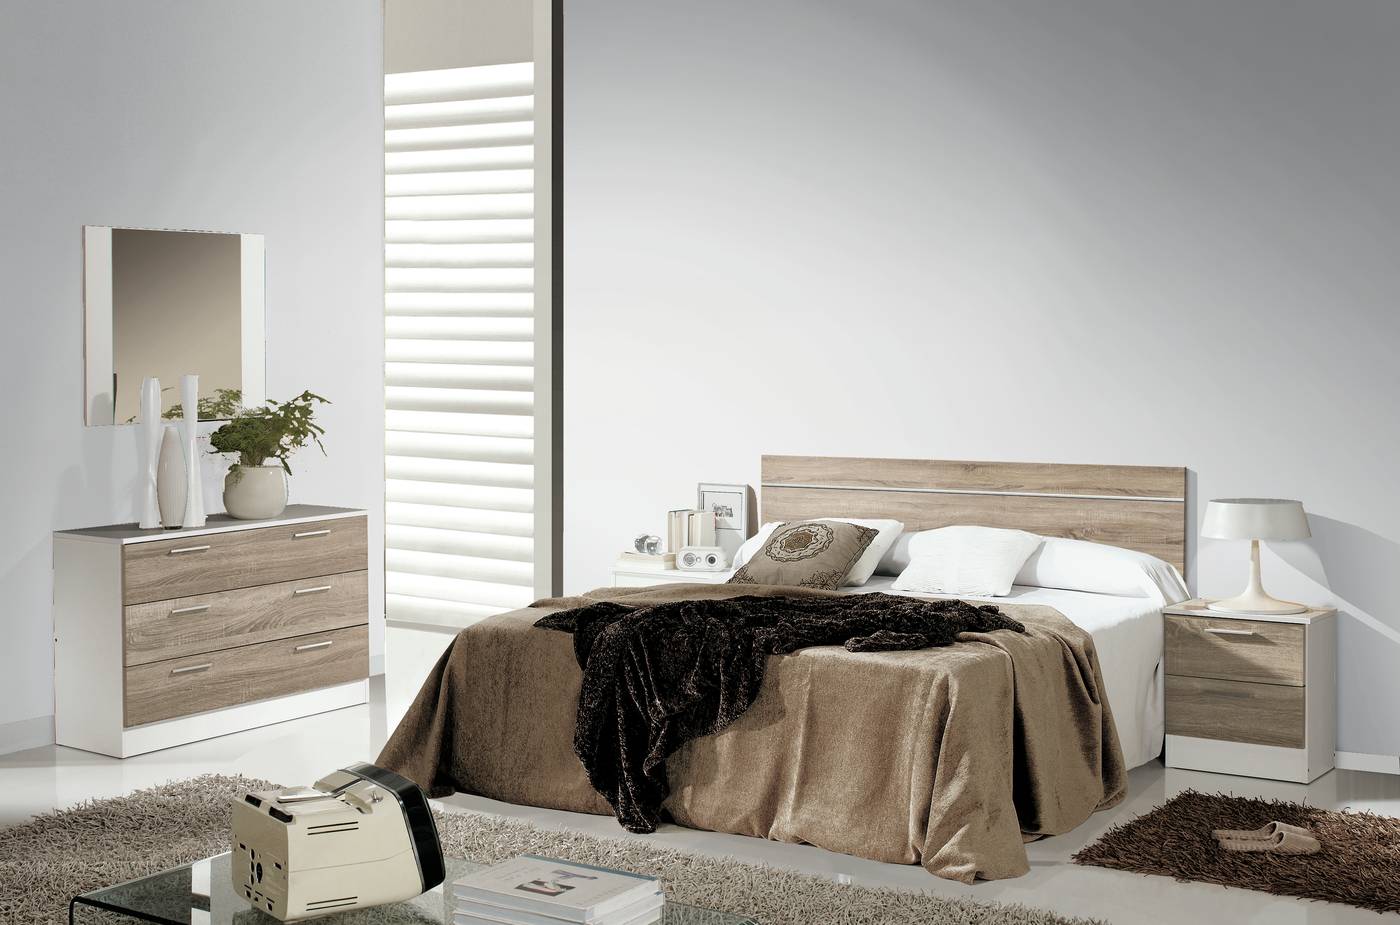 Dormitorio Blanco,Roble,Pizarra - Dormitorio matrimonio color blanco, roble claro o pizarra combinado con blanco